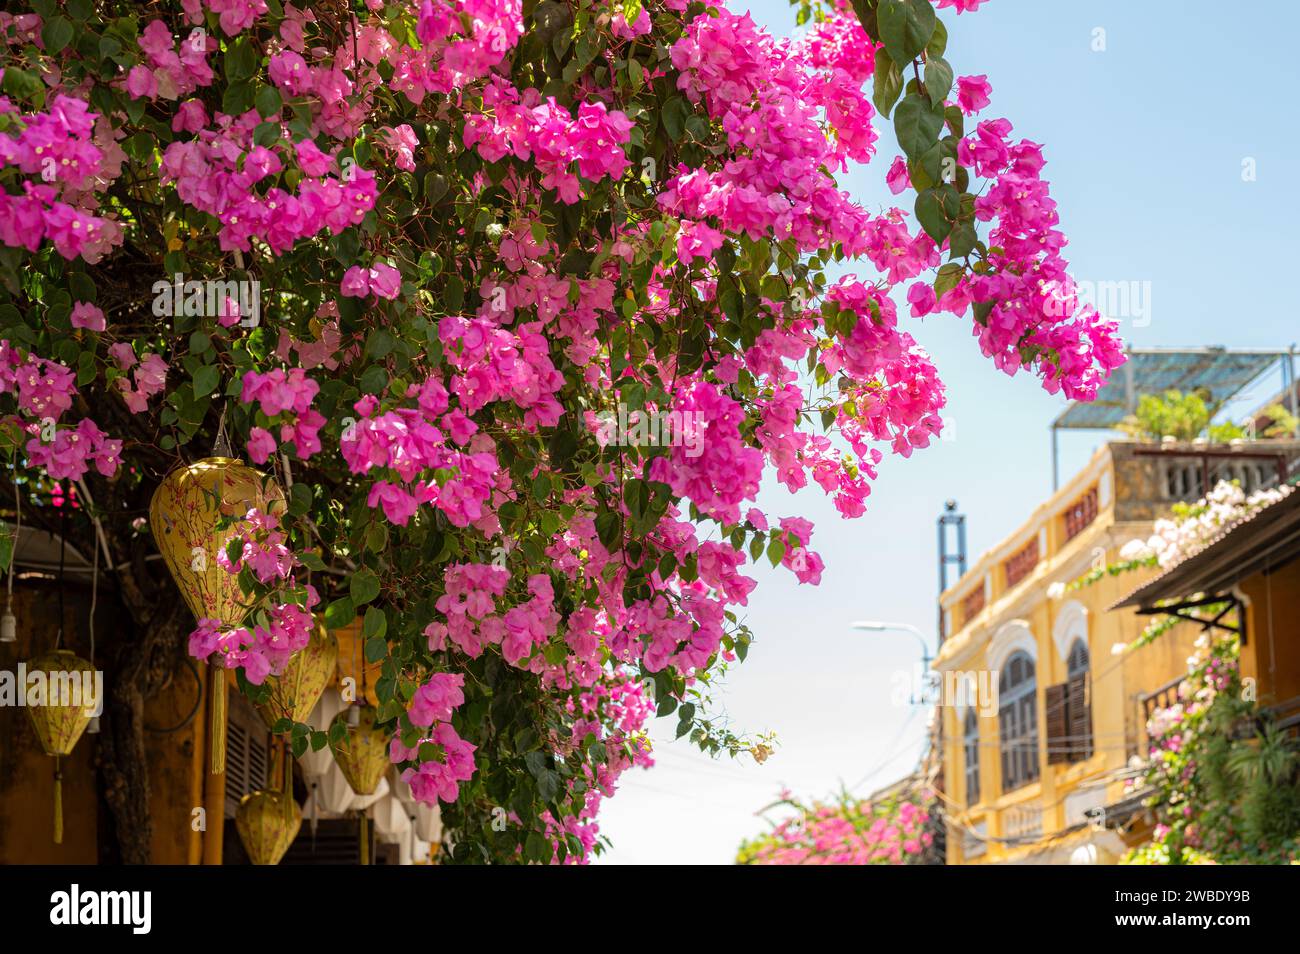 Fleurs roses vibrantes, renversant un bâtiment au cœur de l'ancienne ville vietnamienne de Hoian, site classé au patrimoine mondial de l'UNESCO. Banque D'Images